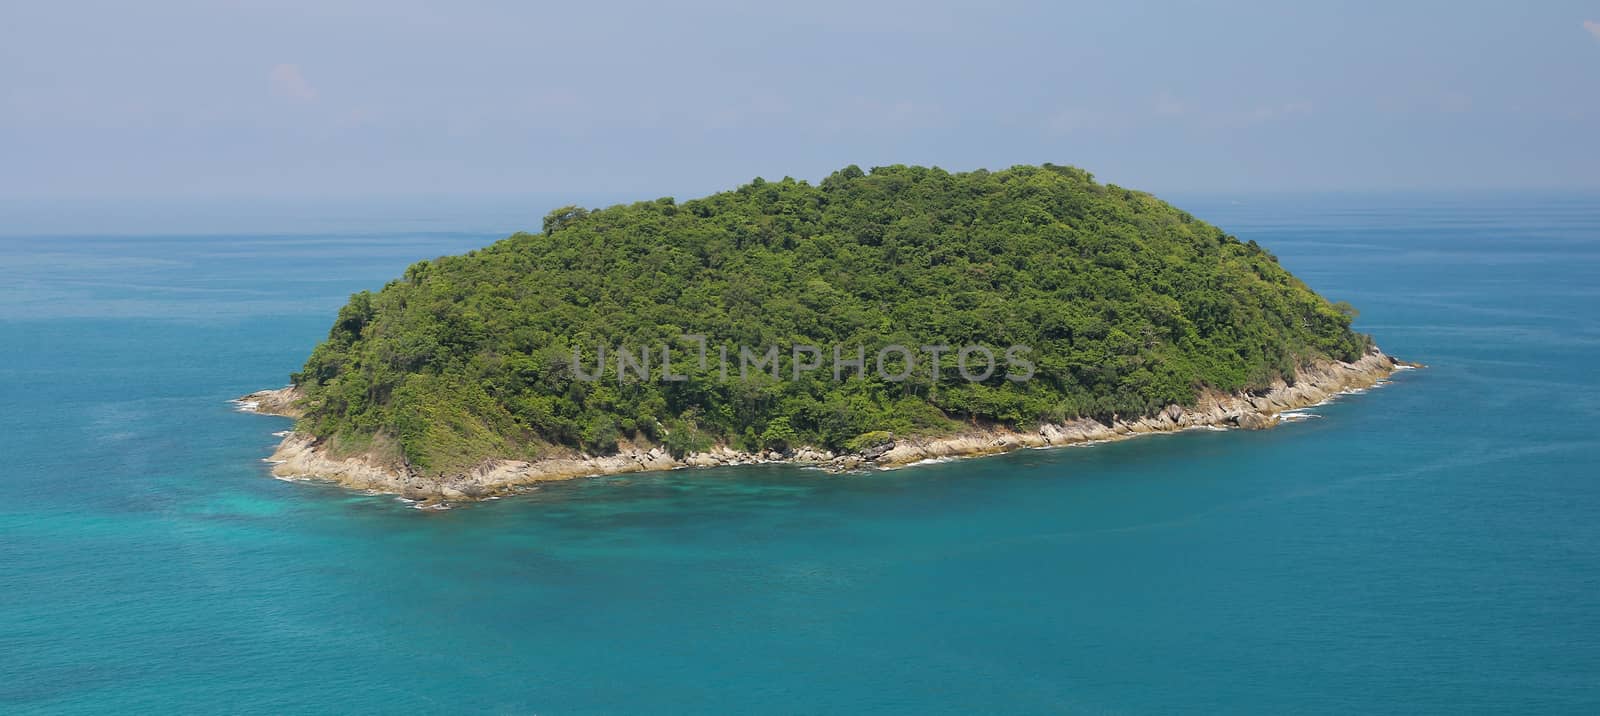 thai island in blue sea by pumppump